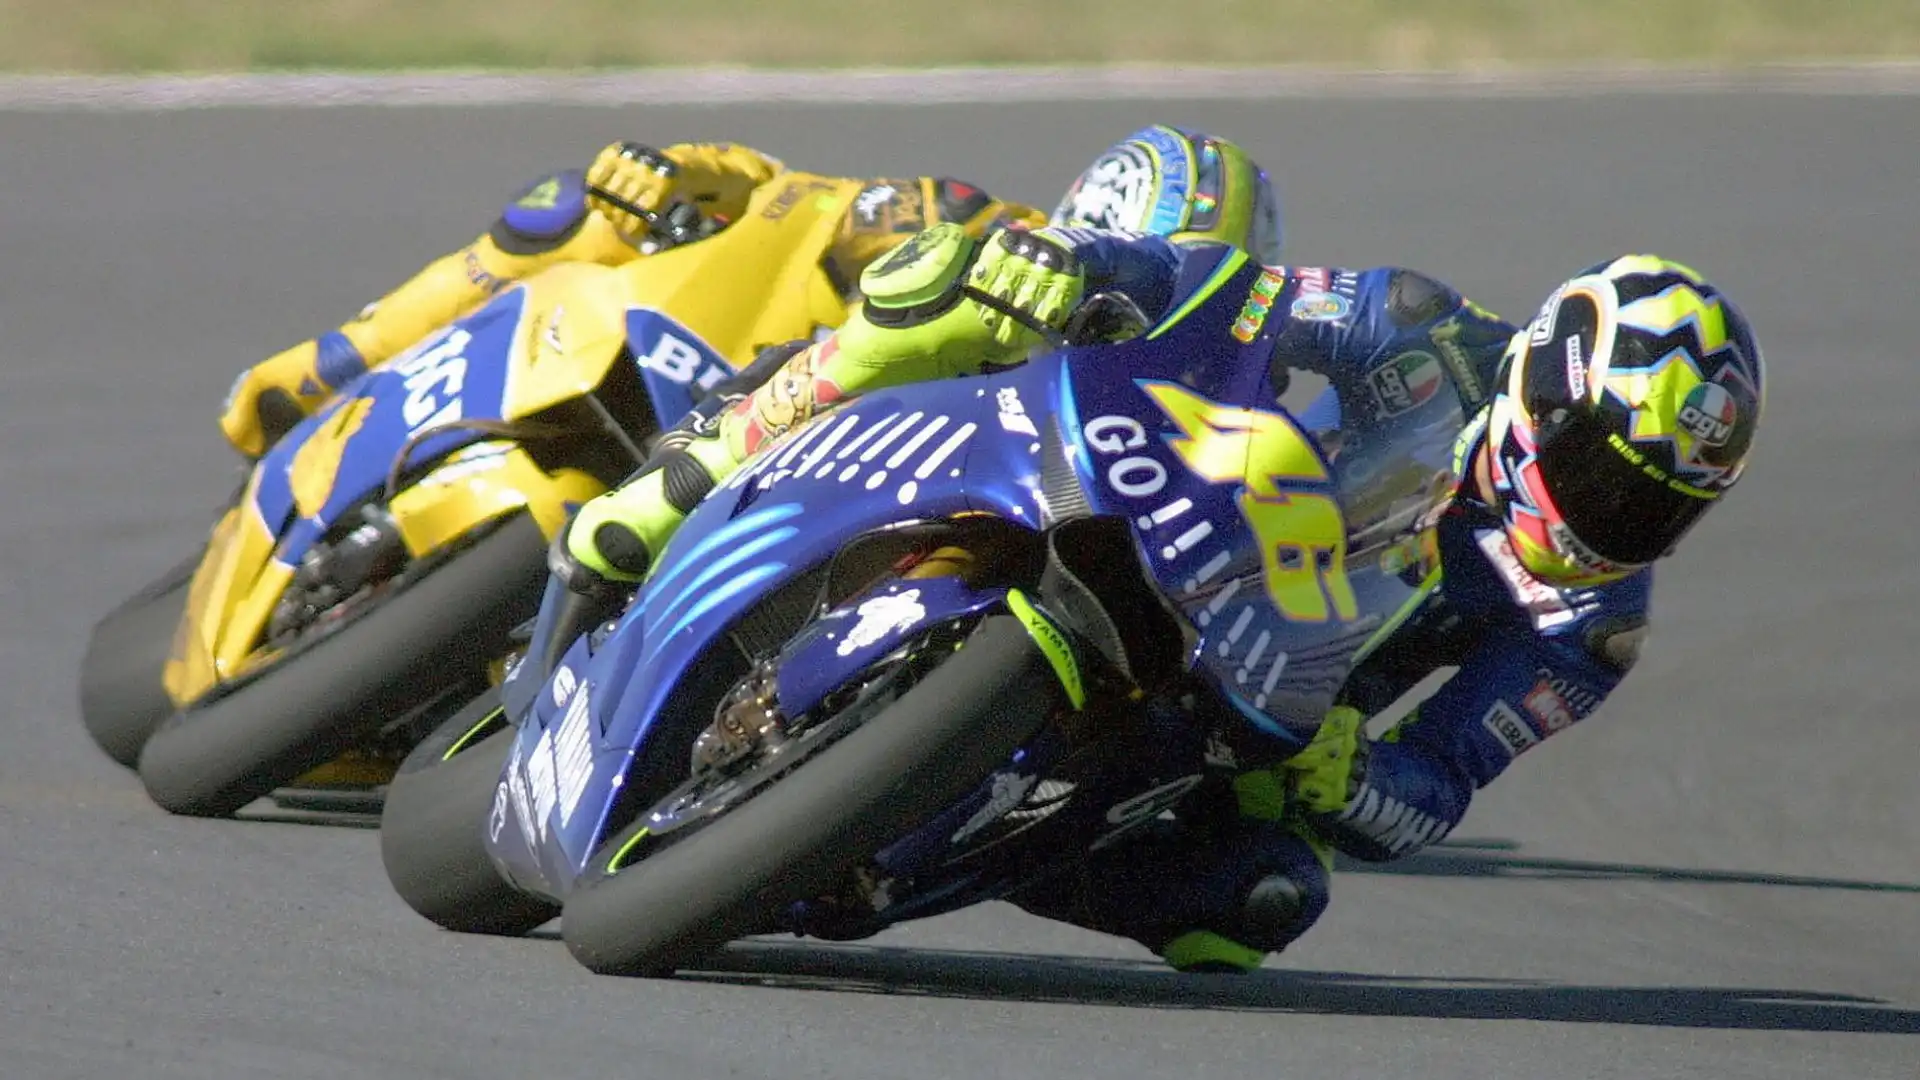 Contro Max Biaggi a Welkom nel 2004: Valentino ottiene la sua storica prima vittoria con la Yamaha sorpassando il Corsaro al penultimo giro